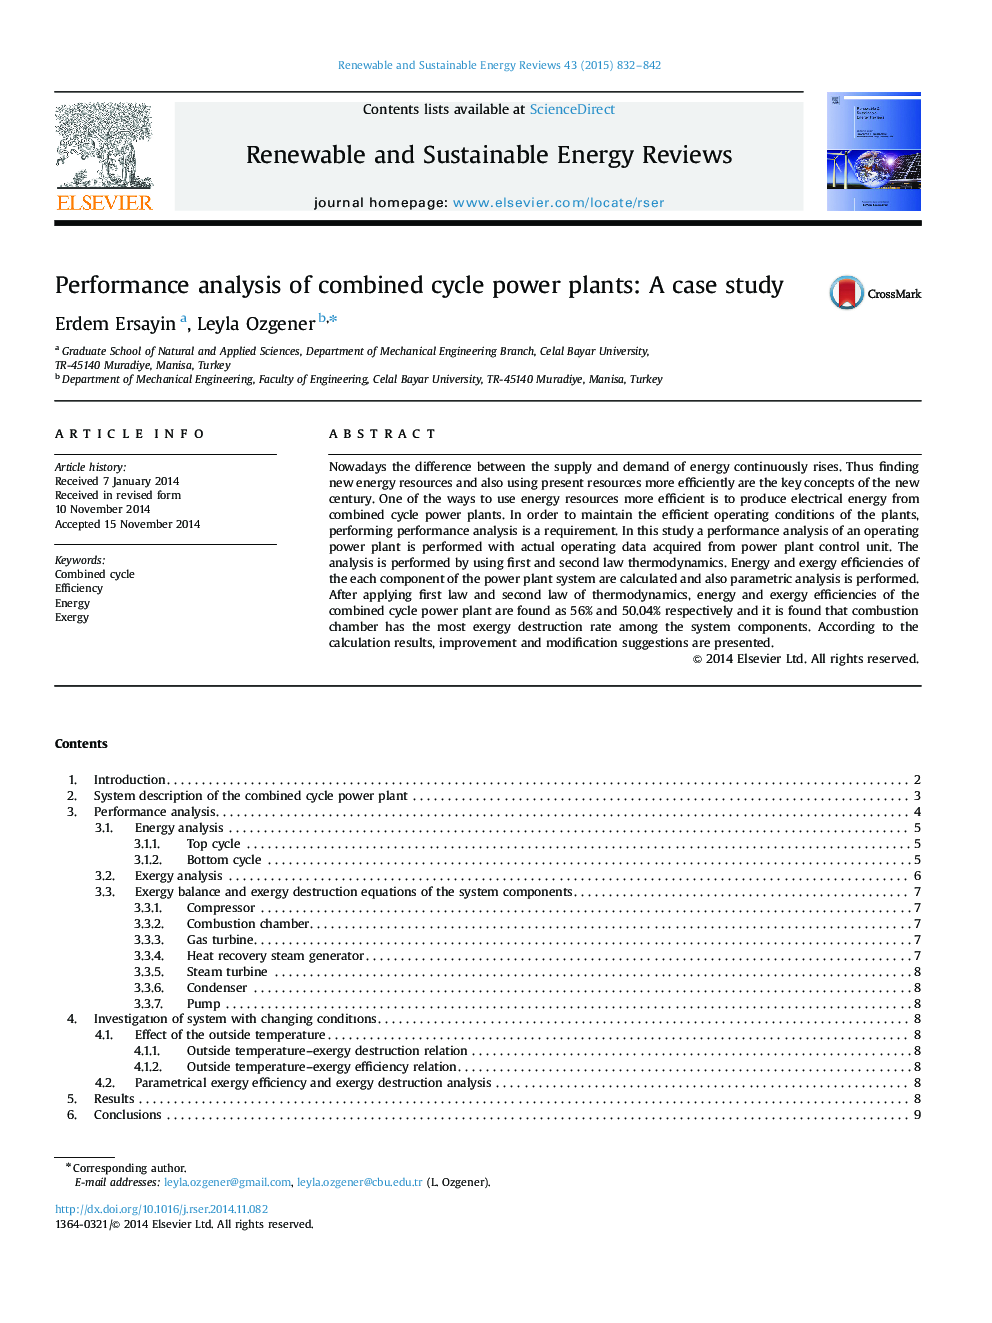 تجزیه و تحلیل عملکرد نیروگاه های ترکیبی ترکیبی: مطالعه موردی 